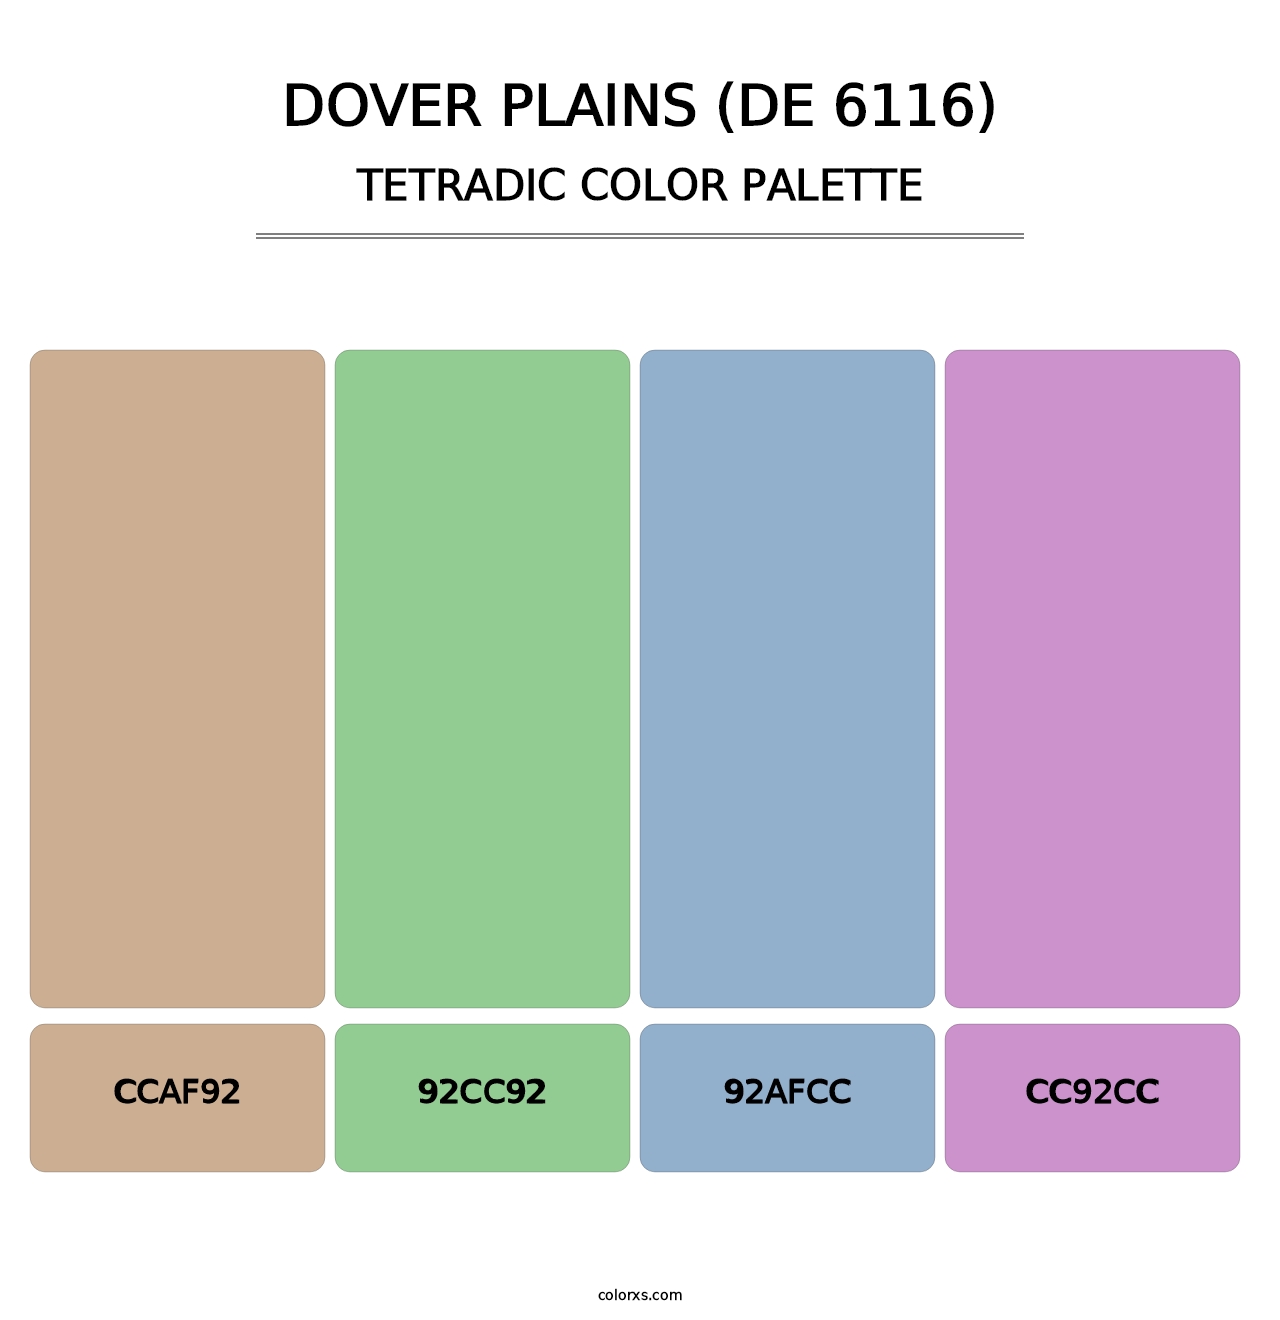 Dover Plains (DE 6116) - Tetradic Color Palette